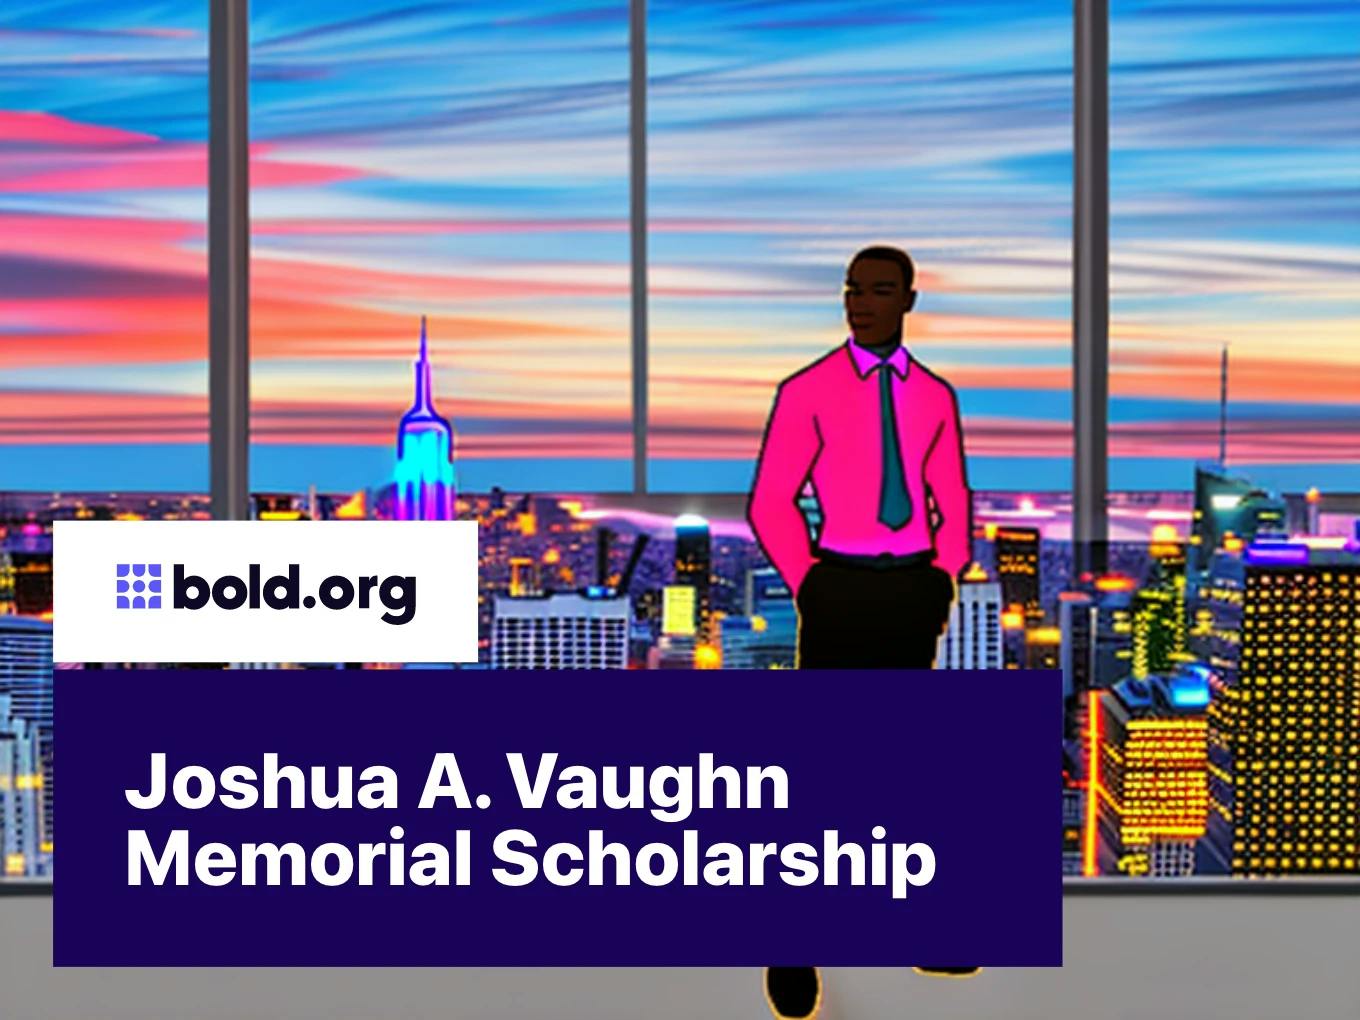 Joshua A. Vaughn Memorial Scholarship